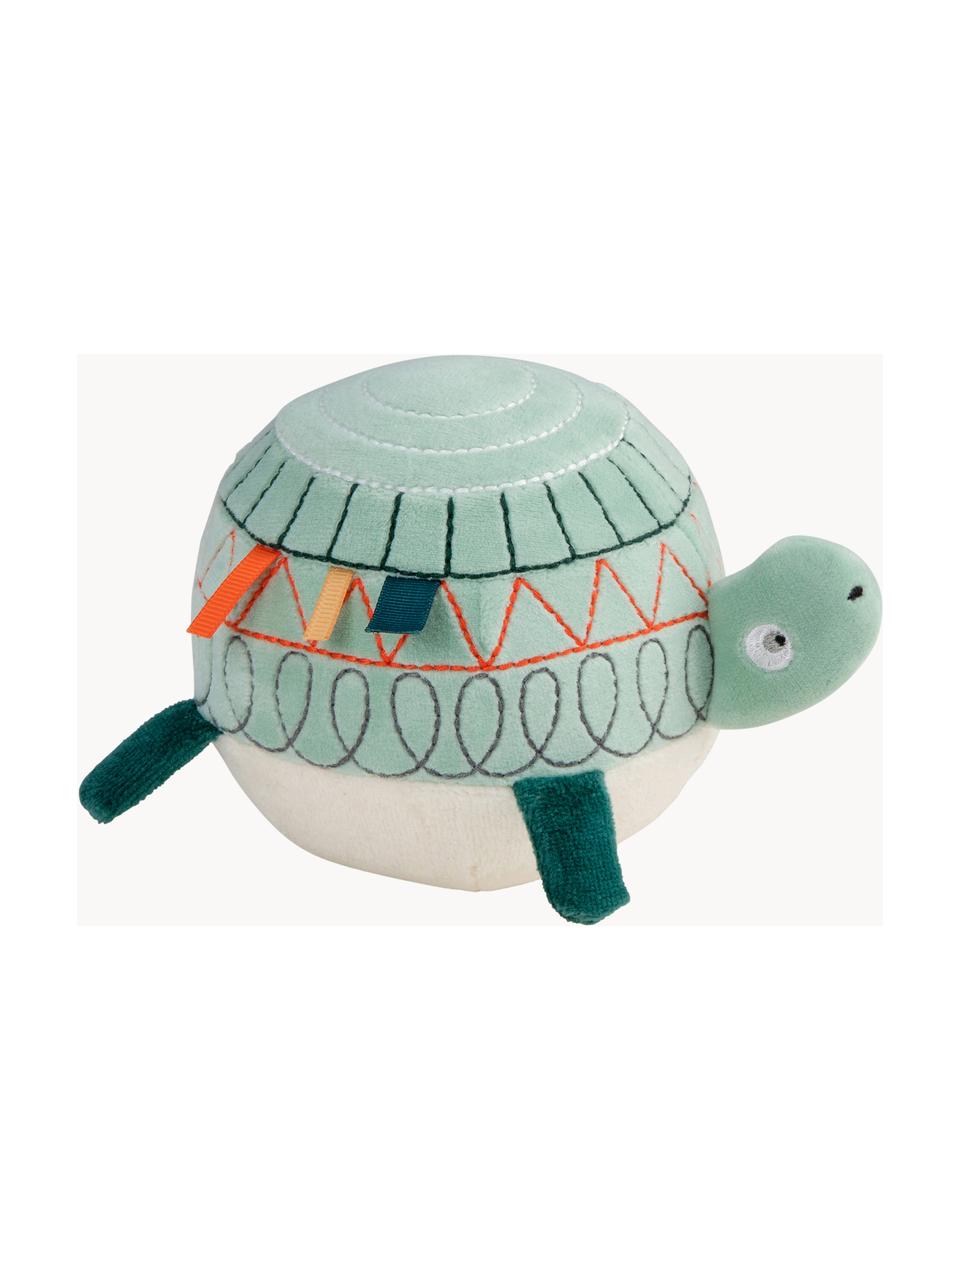 Activiteit speeltje Turbo the Turtle, Bekleding: 80% katoen, 20% polyester, Mintgroene tinten, meerkleurig, B 10 x H 10 cm